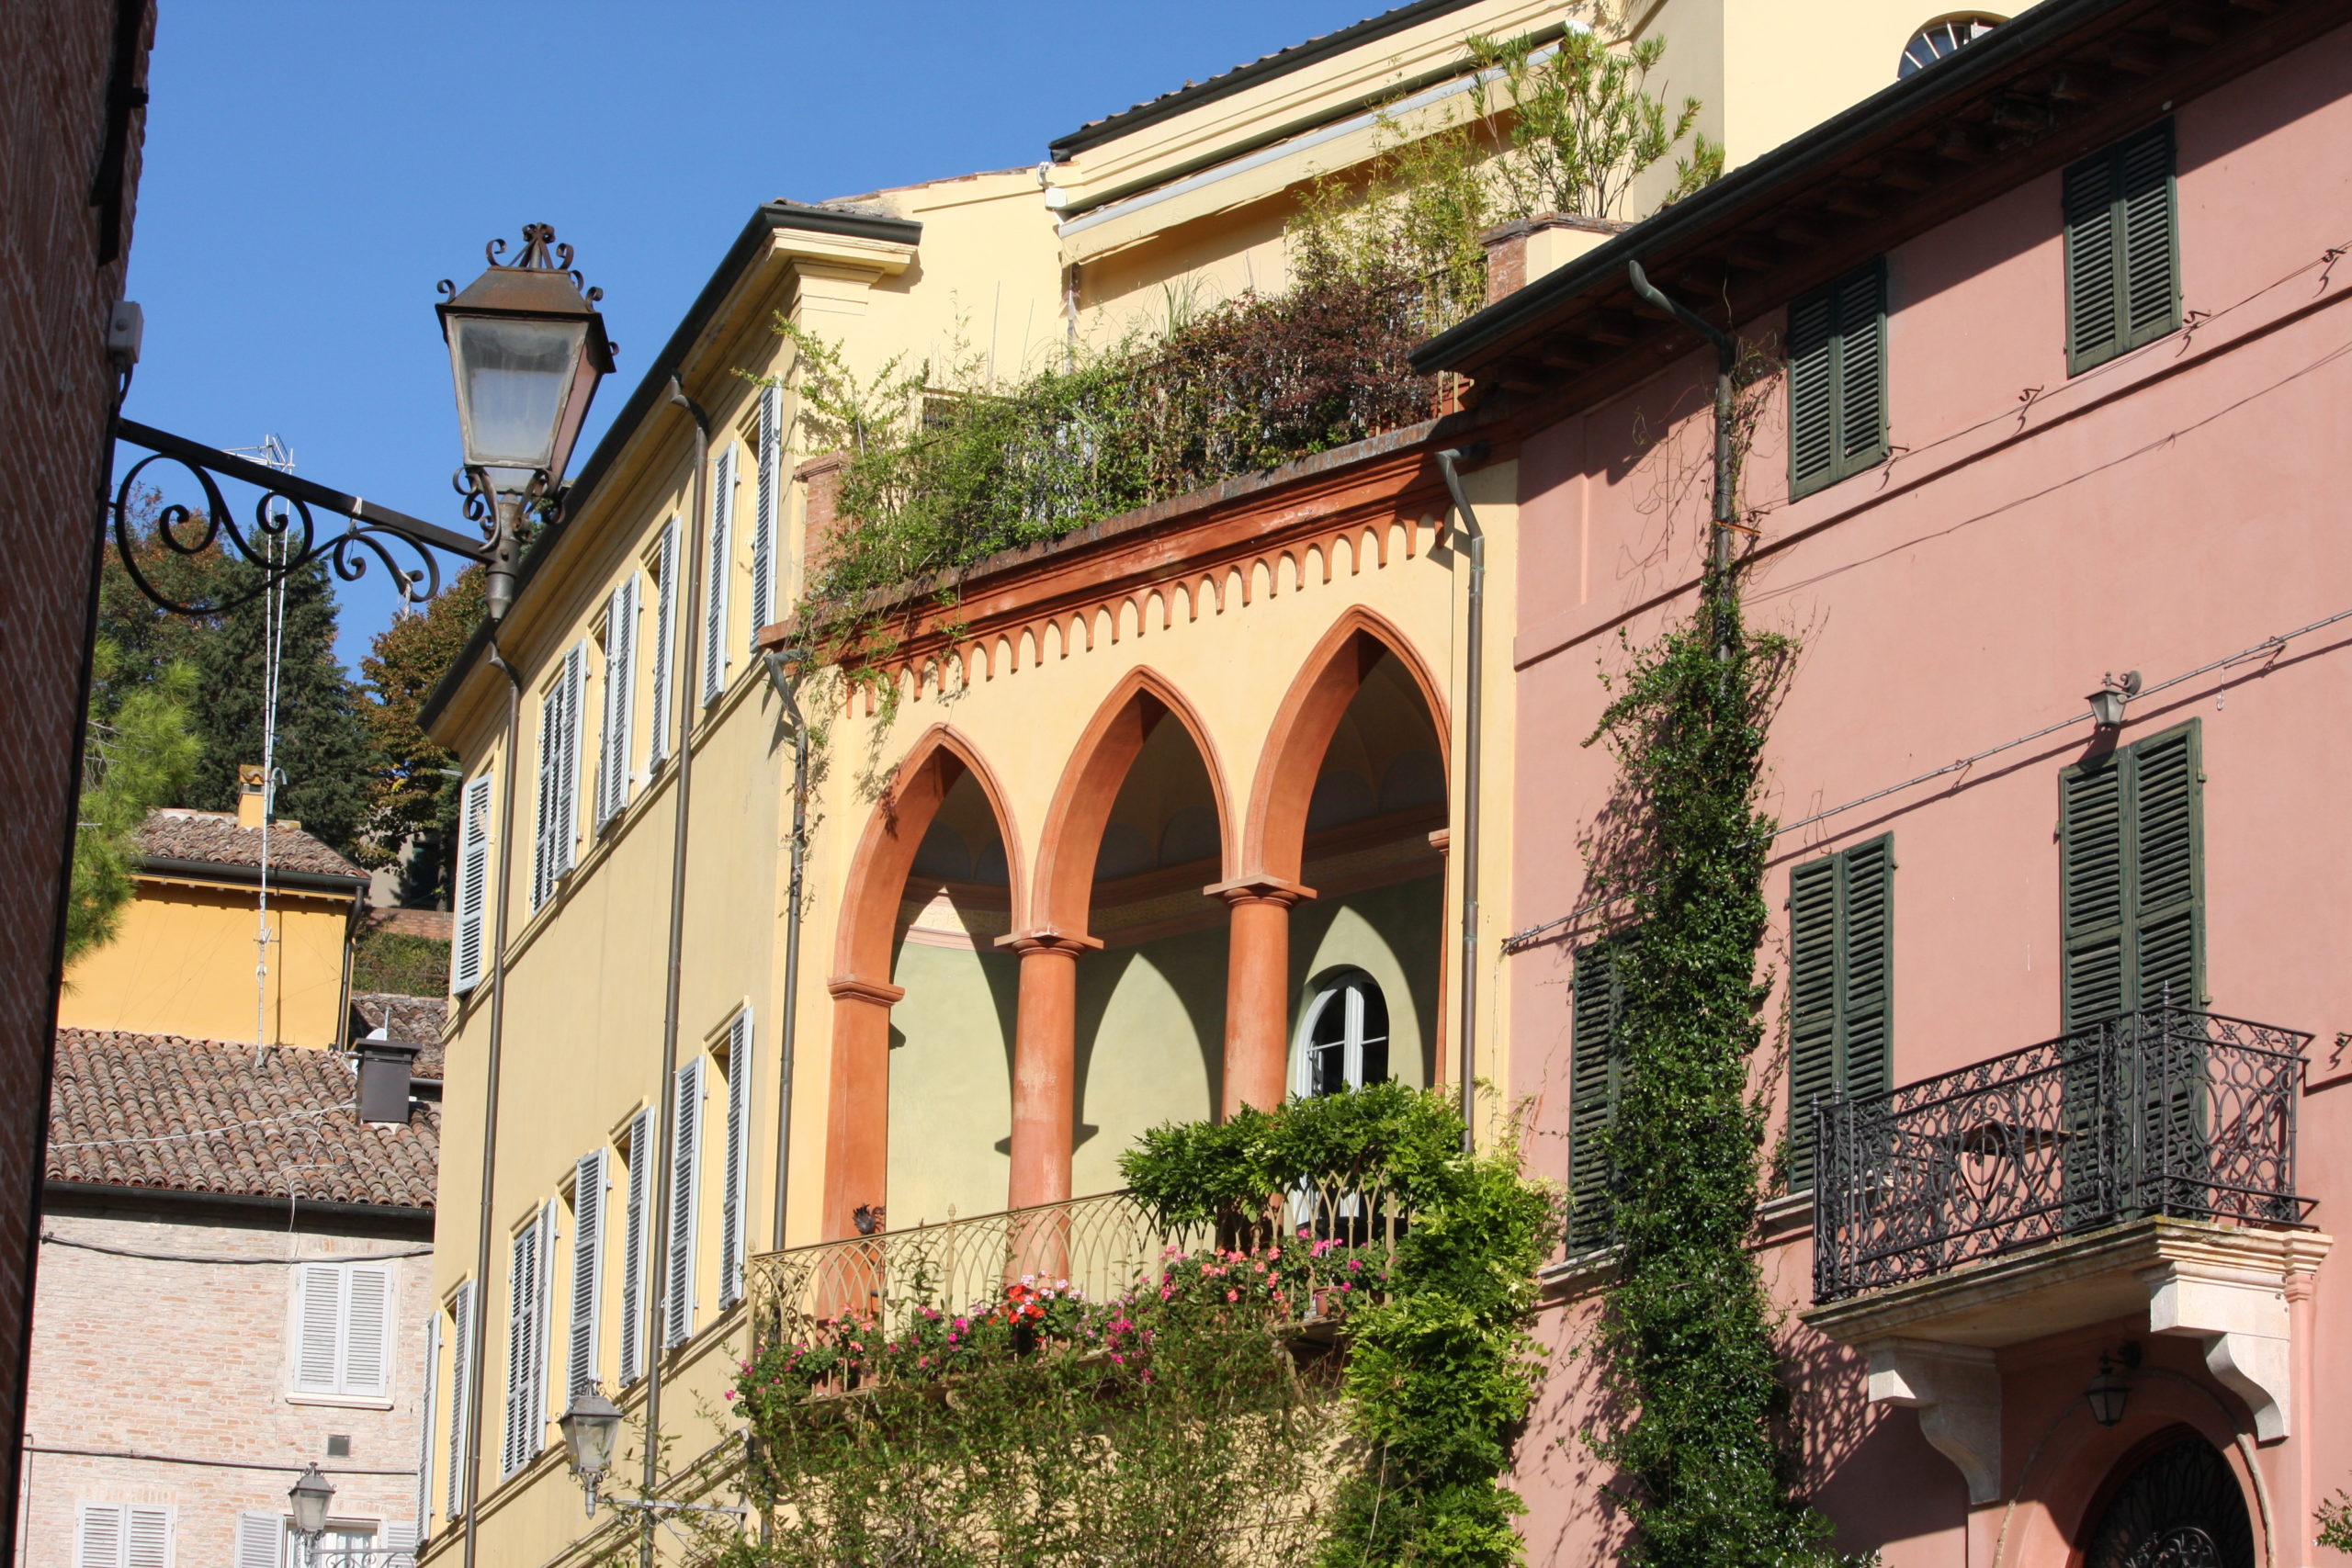 Busreise Italien landestypische Wohnhäuser verschiedenfarbig